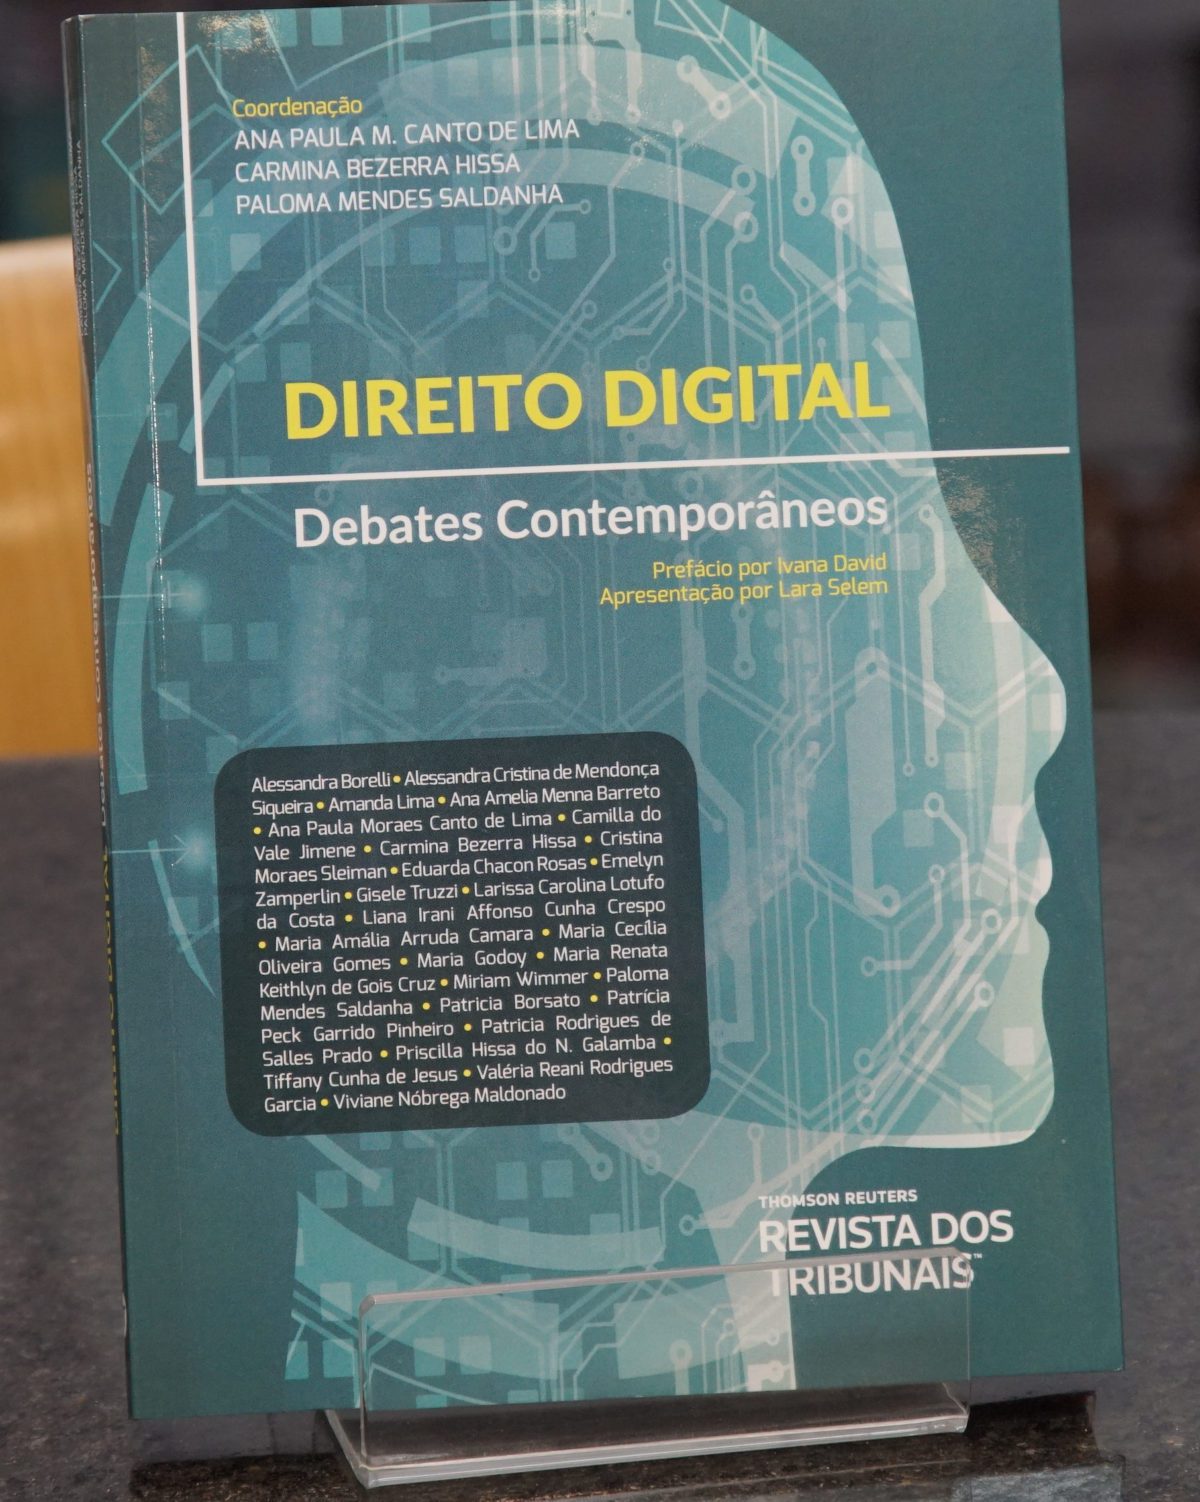 Livro: "DIREITO DIGITAL - Debates Contemporâneos" - outubro/2019